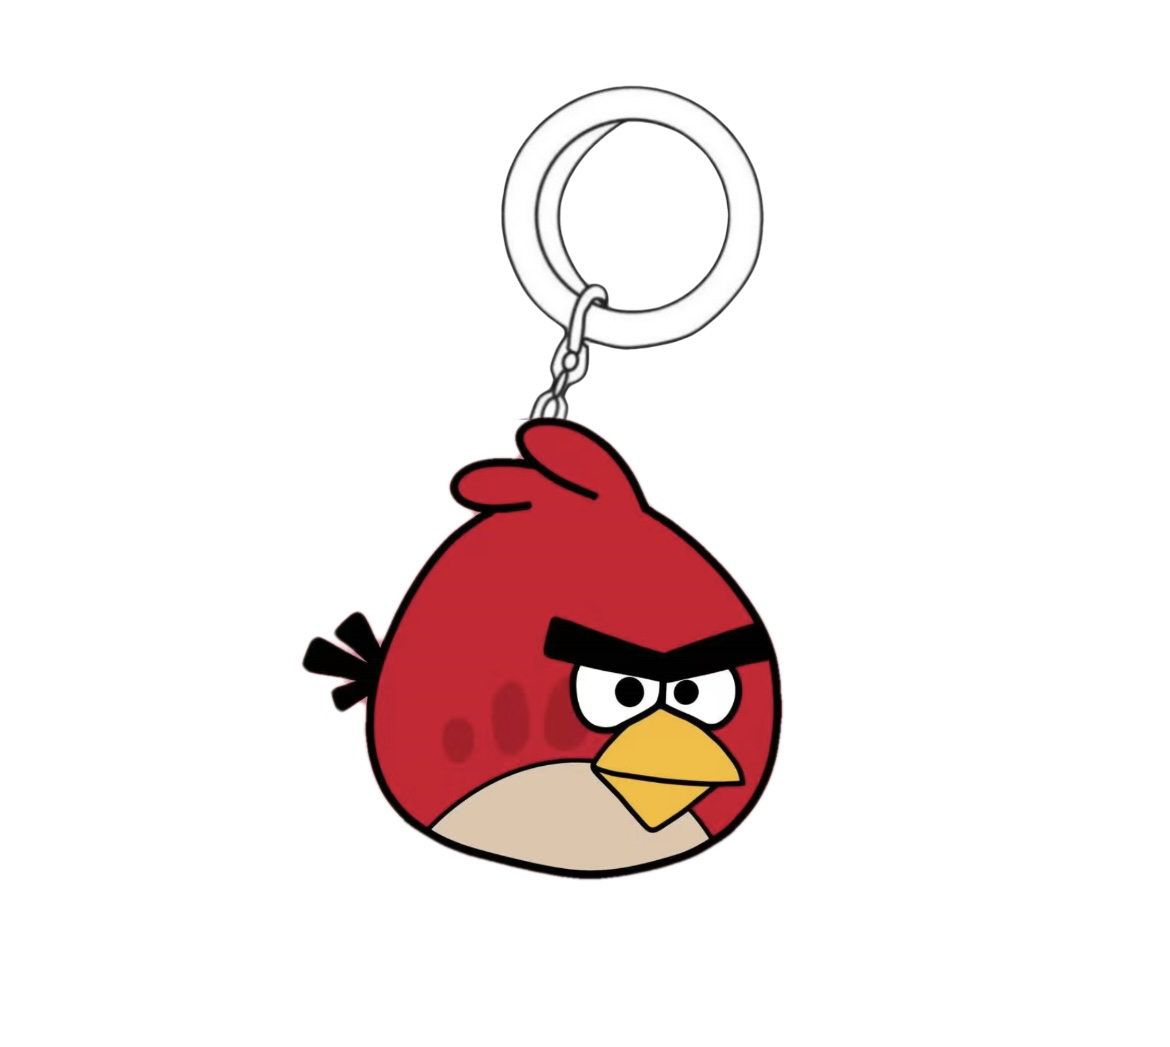 愤怒的小鸟玩具亚克力钥匙扣书包挂件爆款热销底价促销正品保障